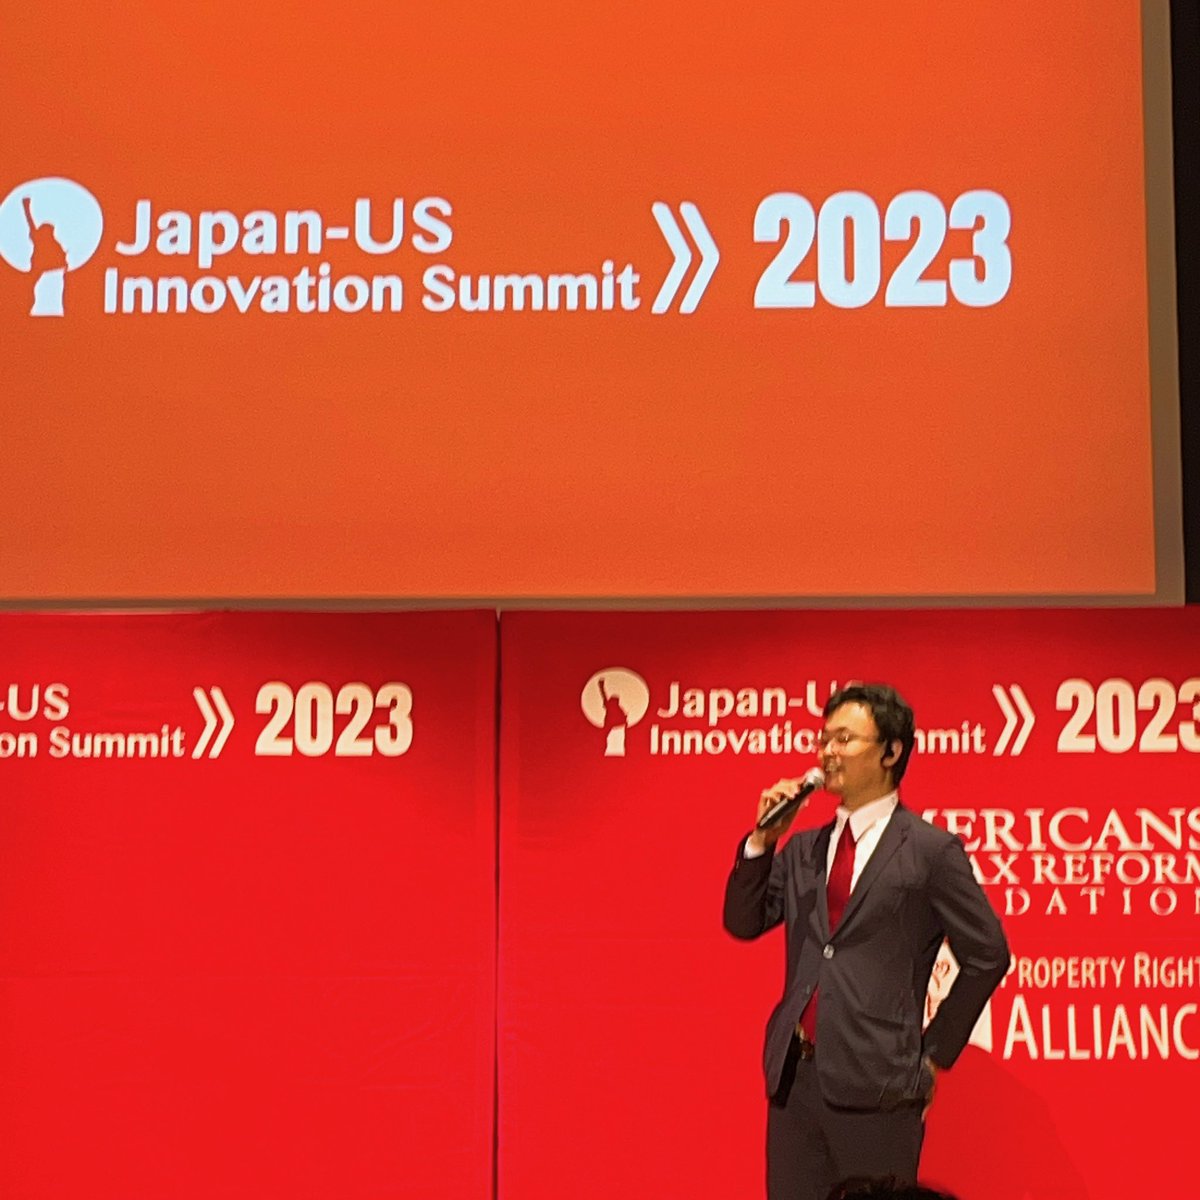 Japan－US Innovation Summit2023無事完了です。

渡瀬裕哉さんのおかげで党派関係なく、たくさんの減税を求める方々と繋がることができている今です。ありがとうございます！！

これからも地道にコツコツ減税実現に向け頑張るしかない！全ての増税に反対し、全ての出会いに感謝します🐰